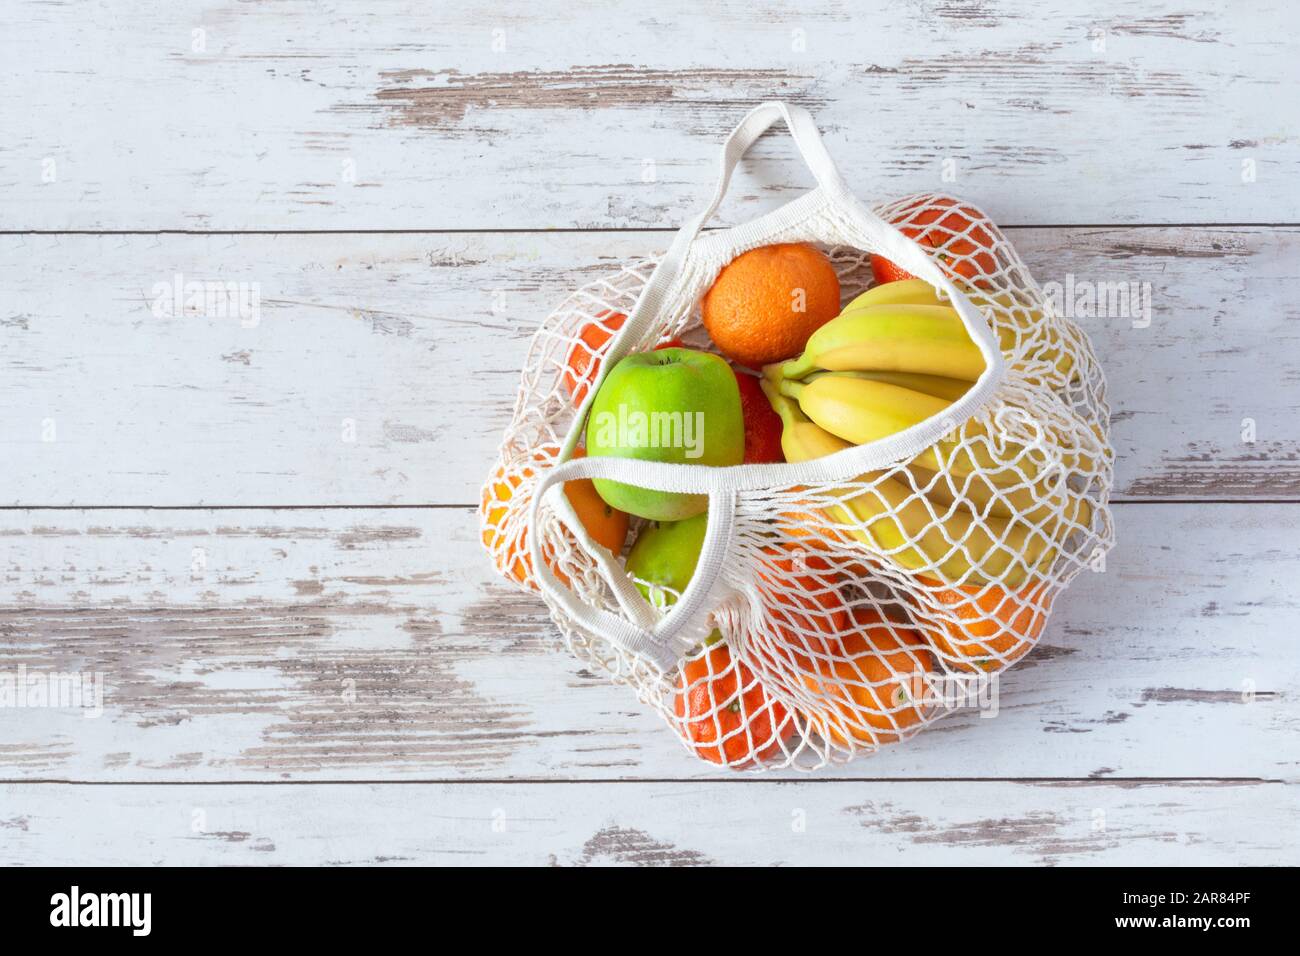 Netztasche aus Baumwolle für Lebensmittel mit Obst und Gemüse. Kein Abfall, kein Kunststoffeinkauf. Nachhaltiges Lifestyle-Konzept. Recycling. Stockfoto